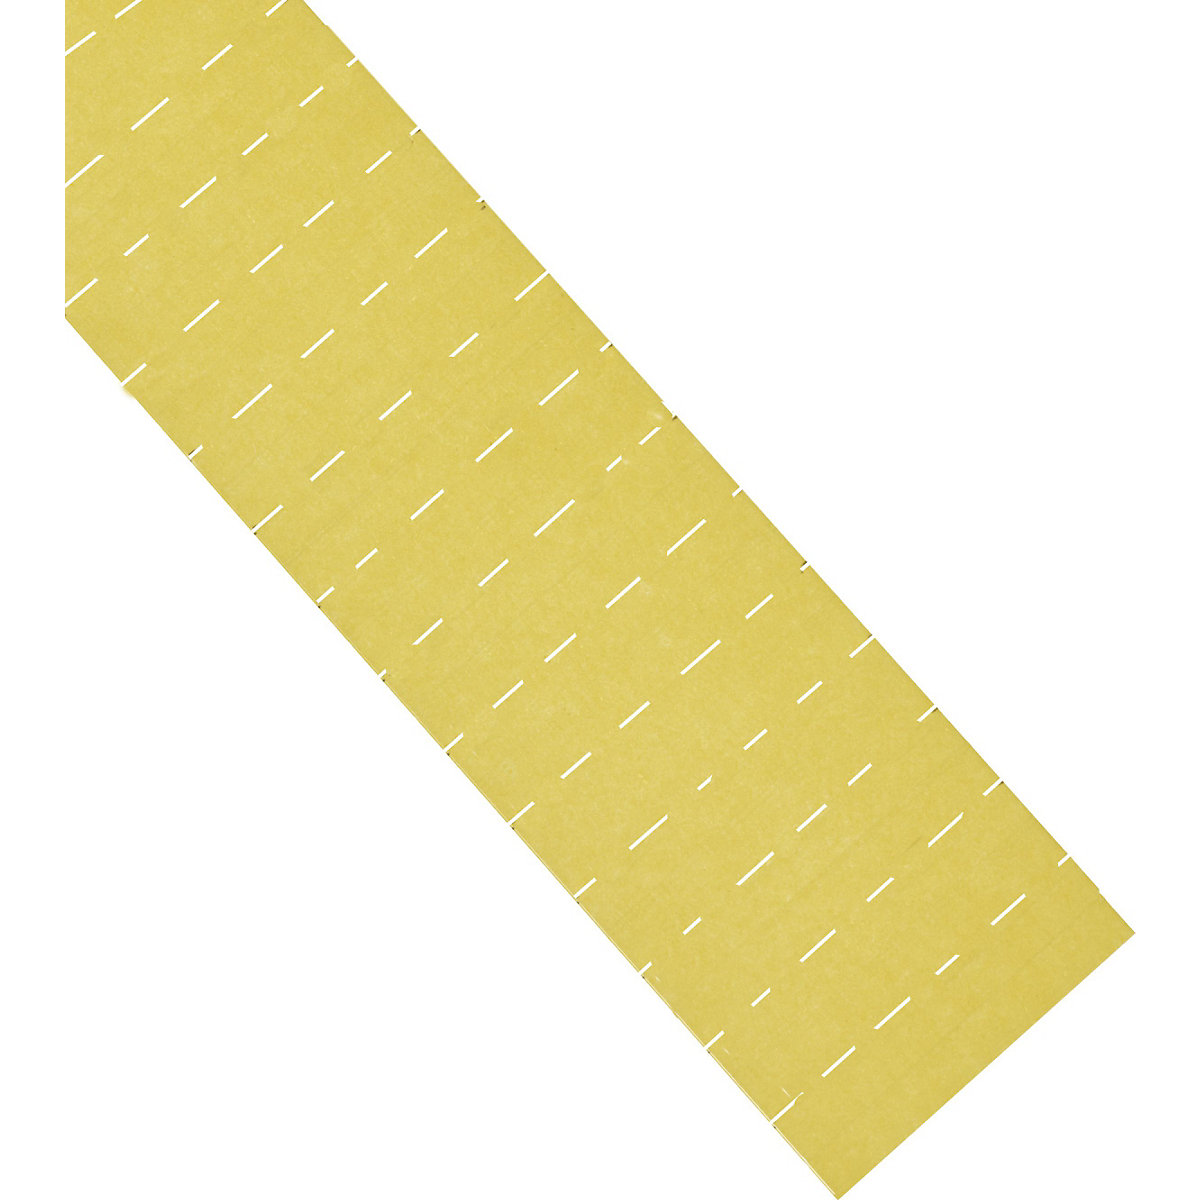 Etikete ferrocard – magnetoplan, VxŠ 22 x 28 mm, pak. 225 kom., u žutoj boji